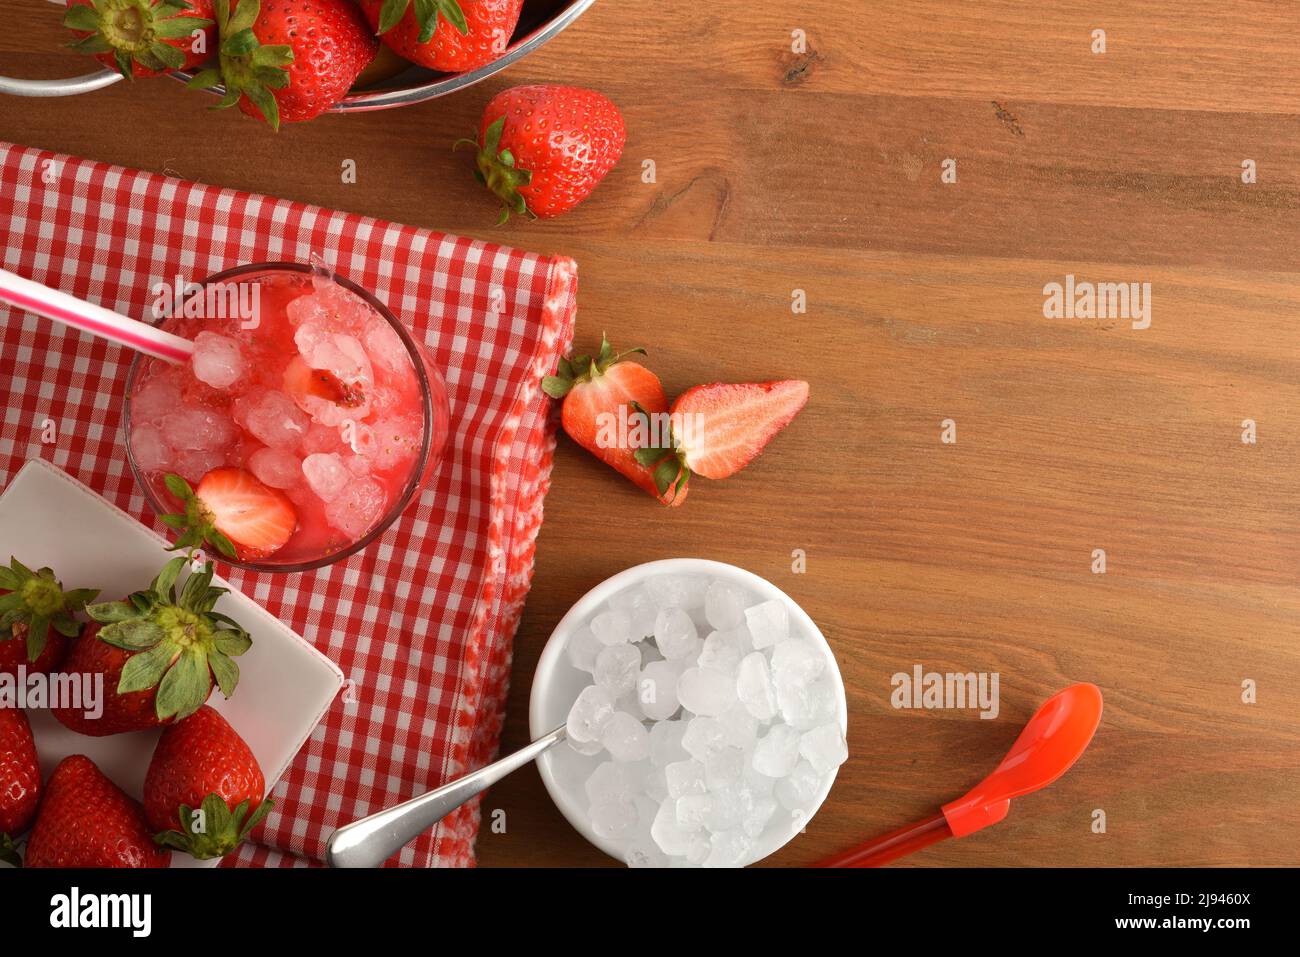 Granita de fruits avec fraises mûres et beaucoup de glace sur une table en bois avec un bol de glace et un panier rempli de fraises. Vue de dessus. Position horizontale Banque D'Images